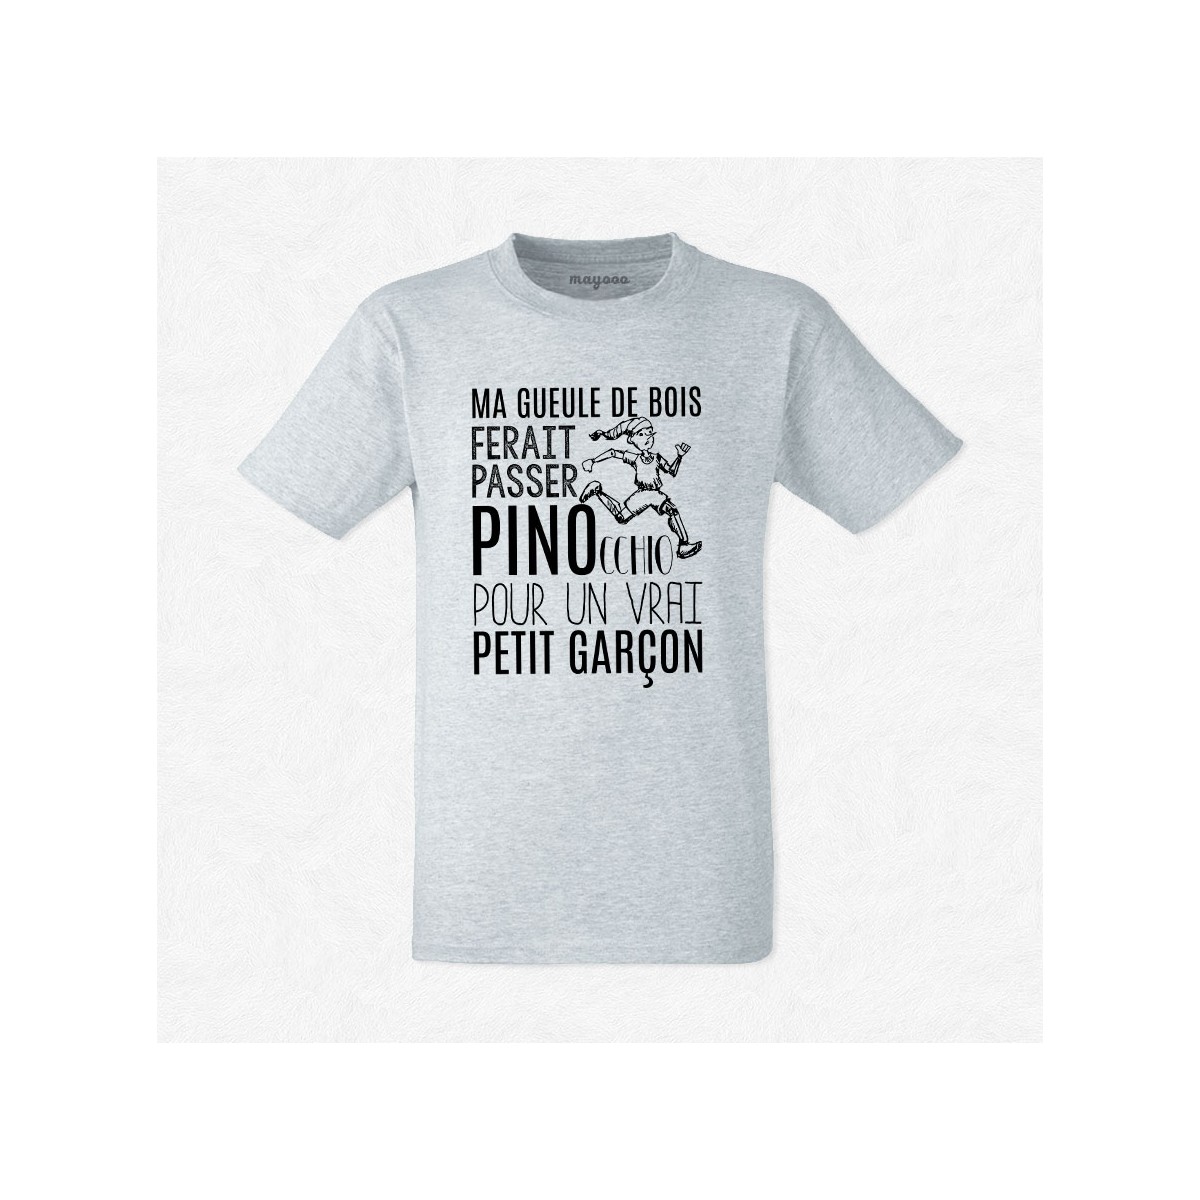 T-shirt Gueule de bois Pinocchio